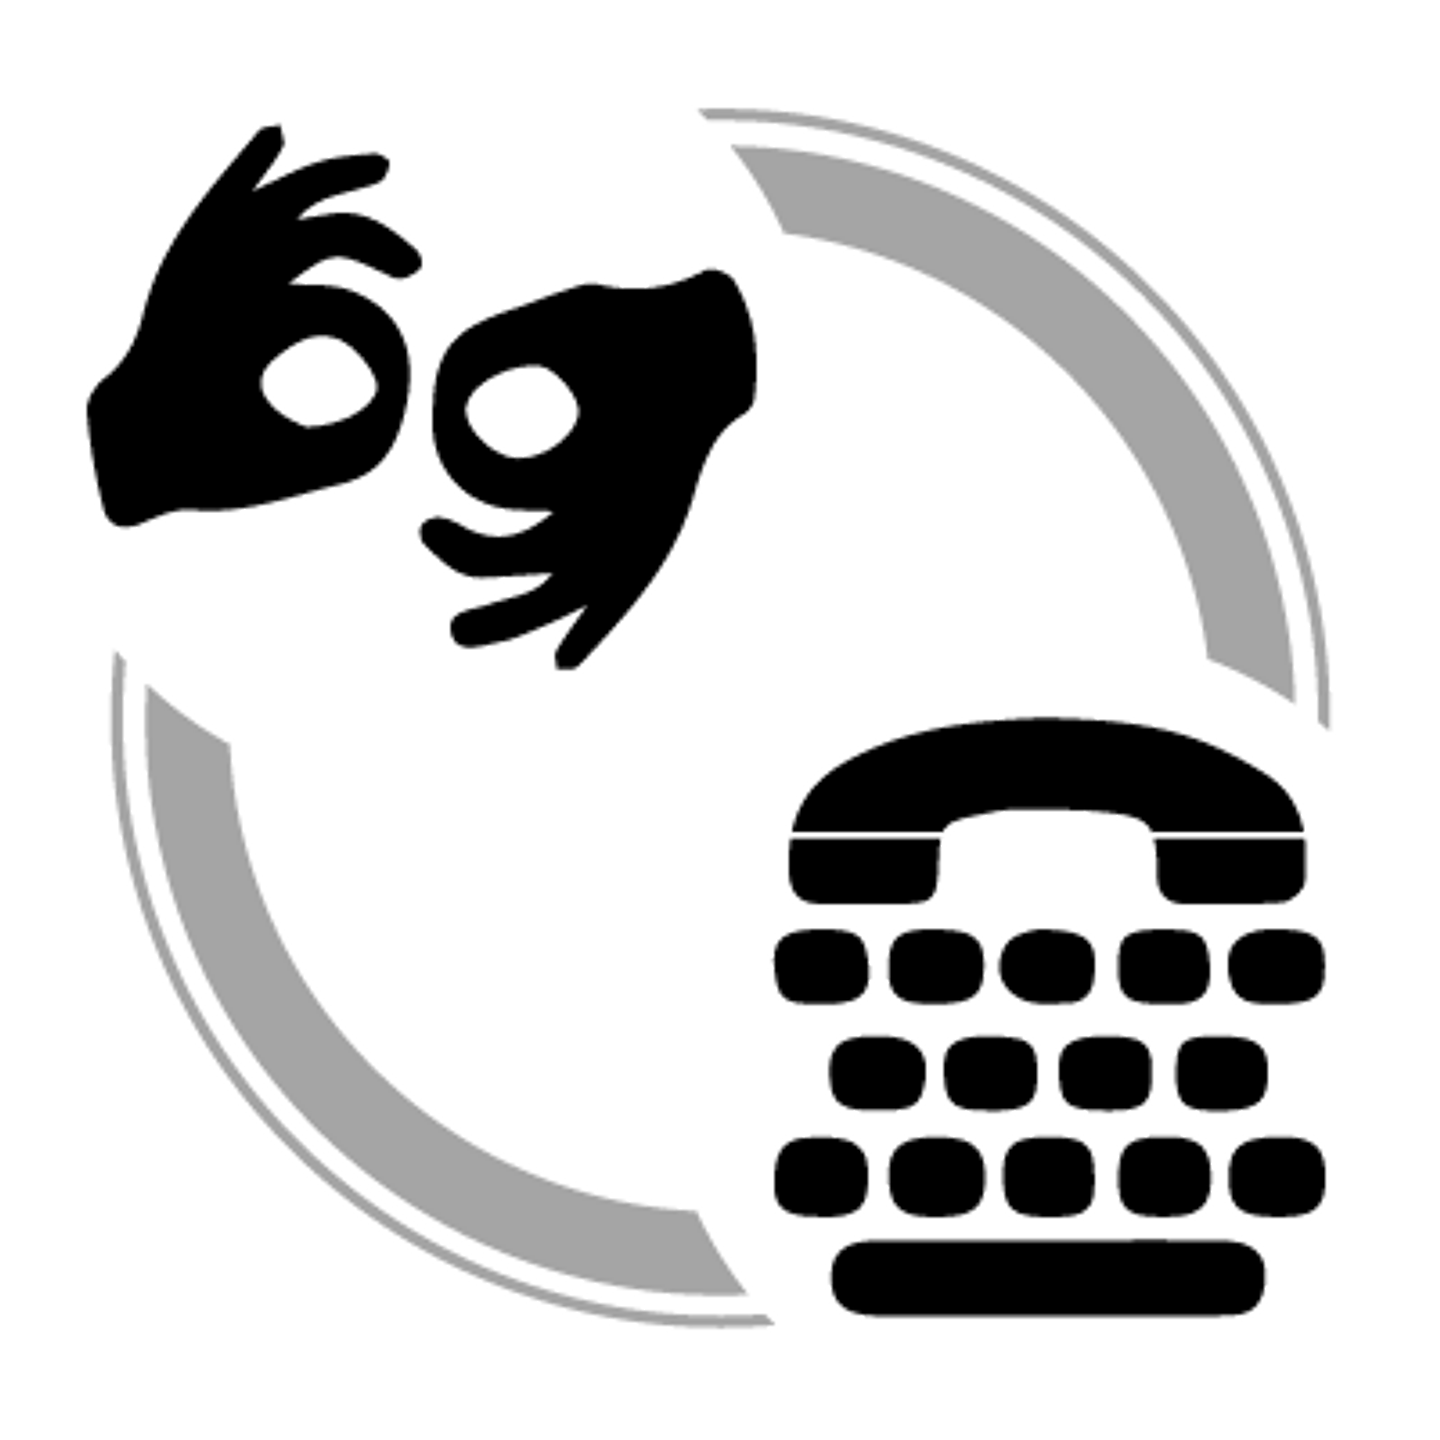 Sign language and teletypewriter icon